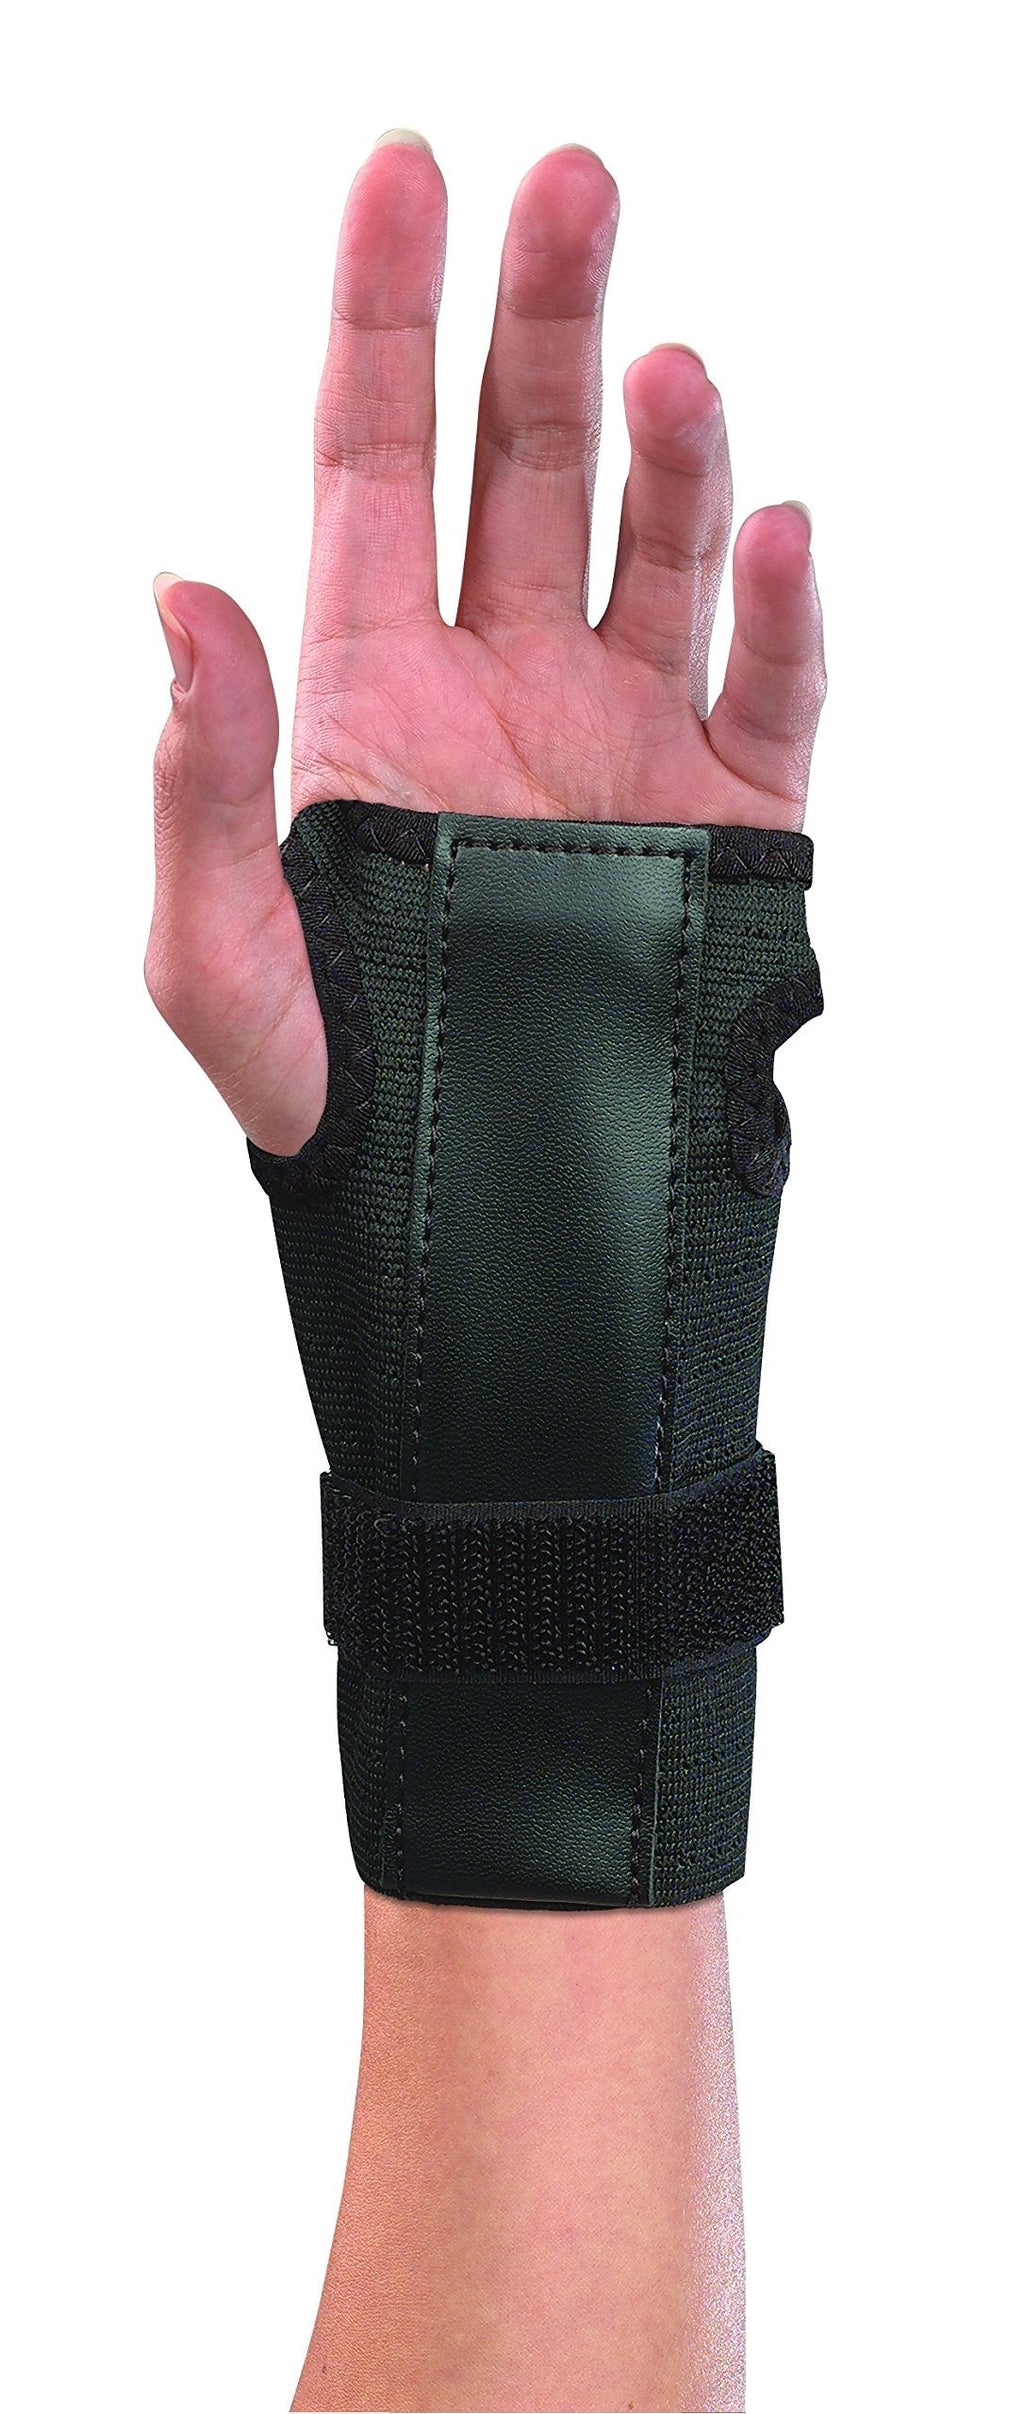 [Australia] - Mueller Adjustable Wrist Brace W/Splint (300) Black 